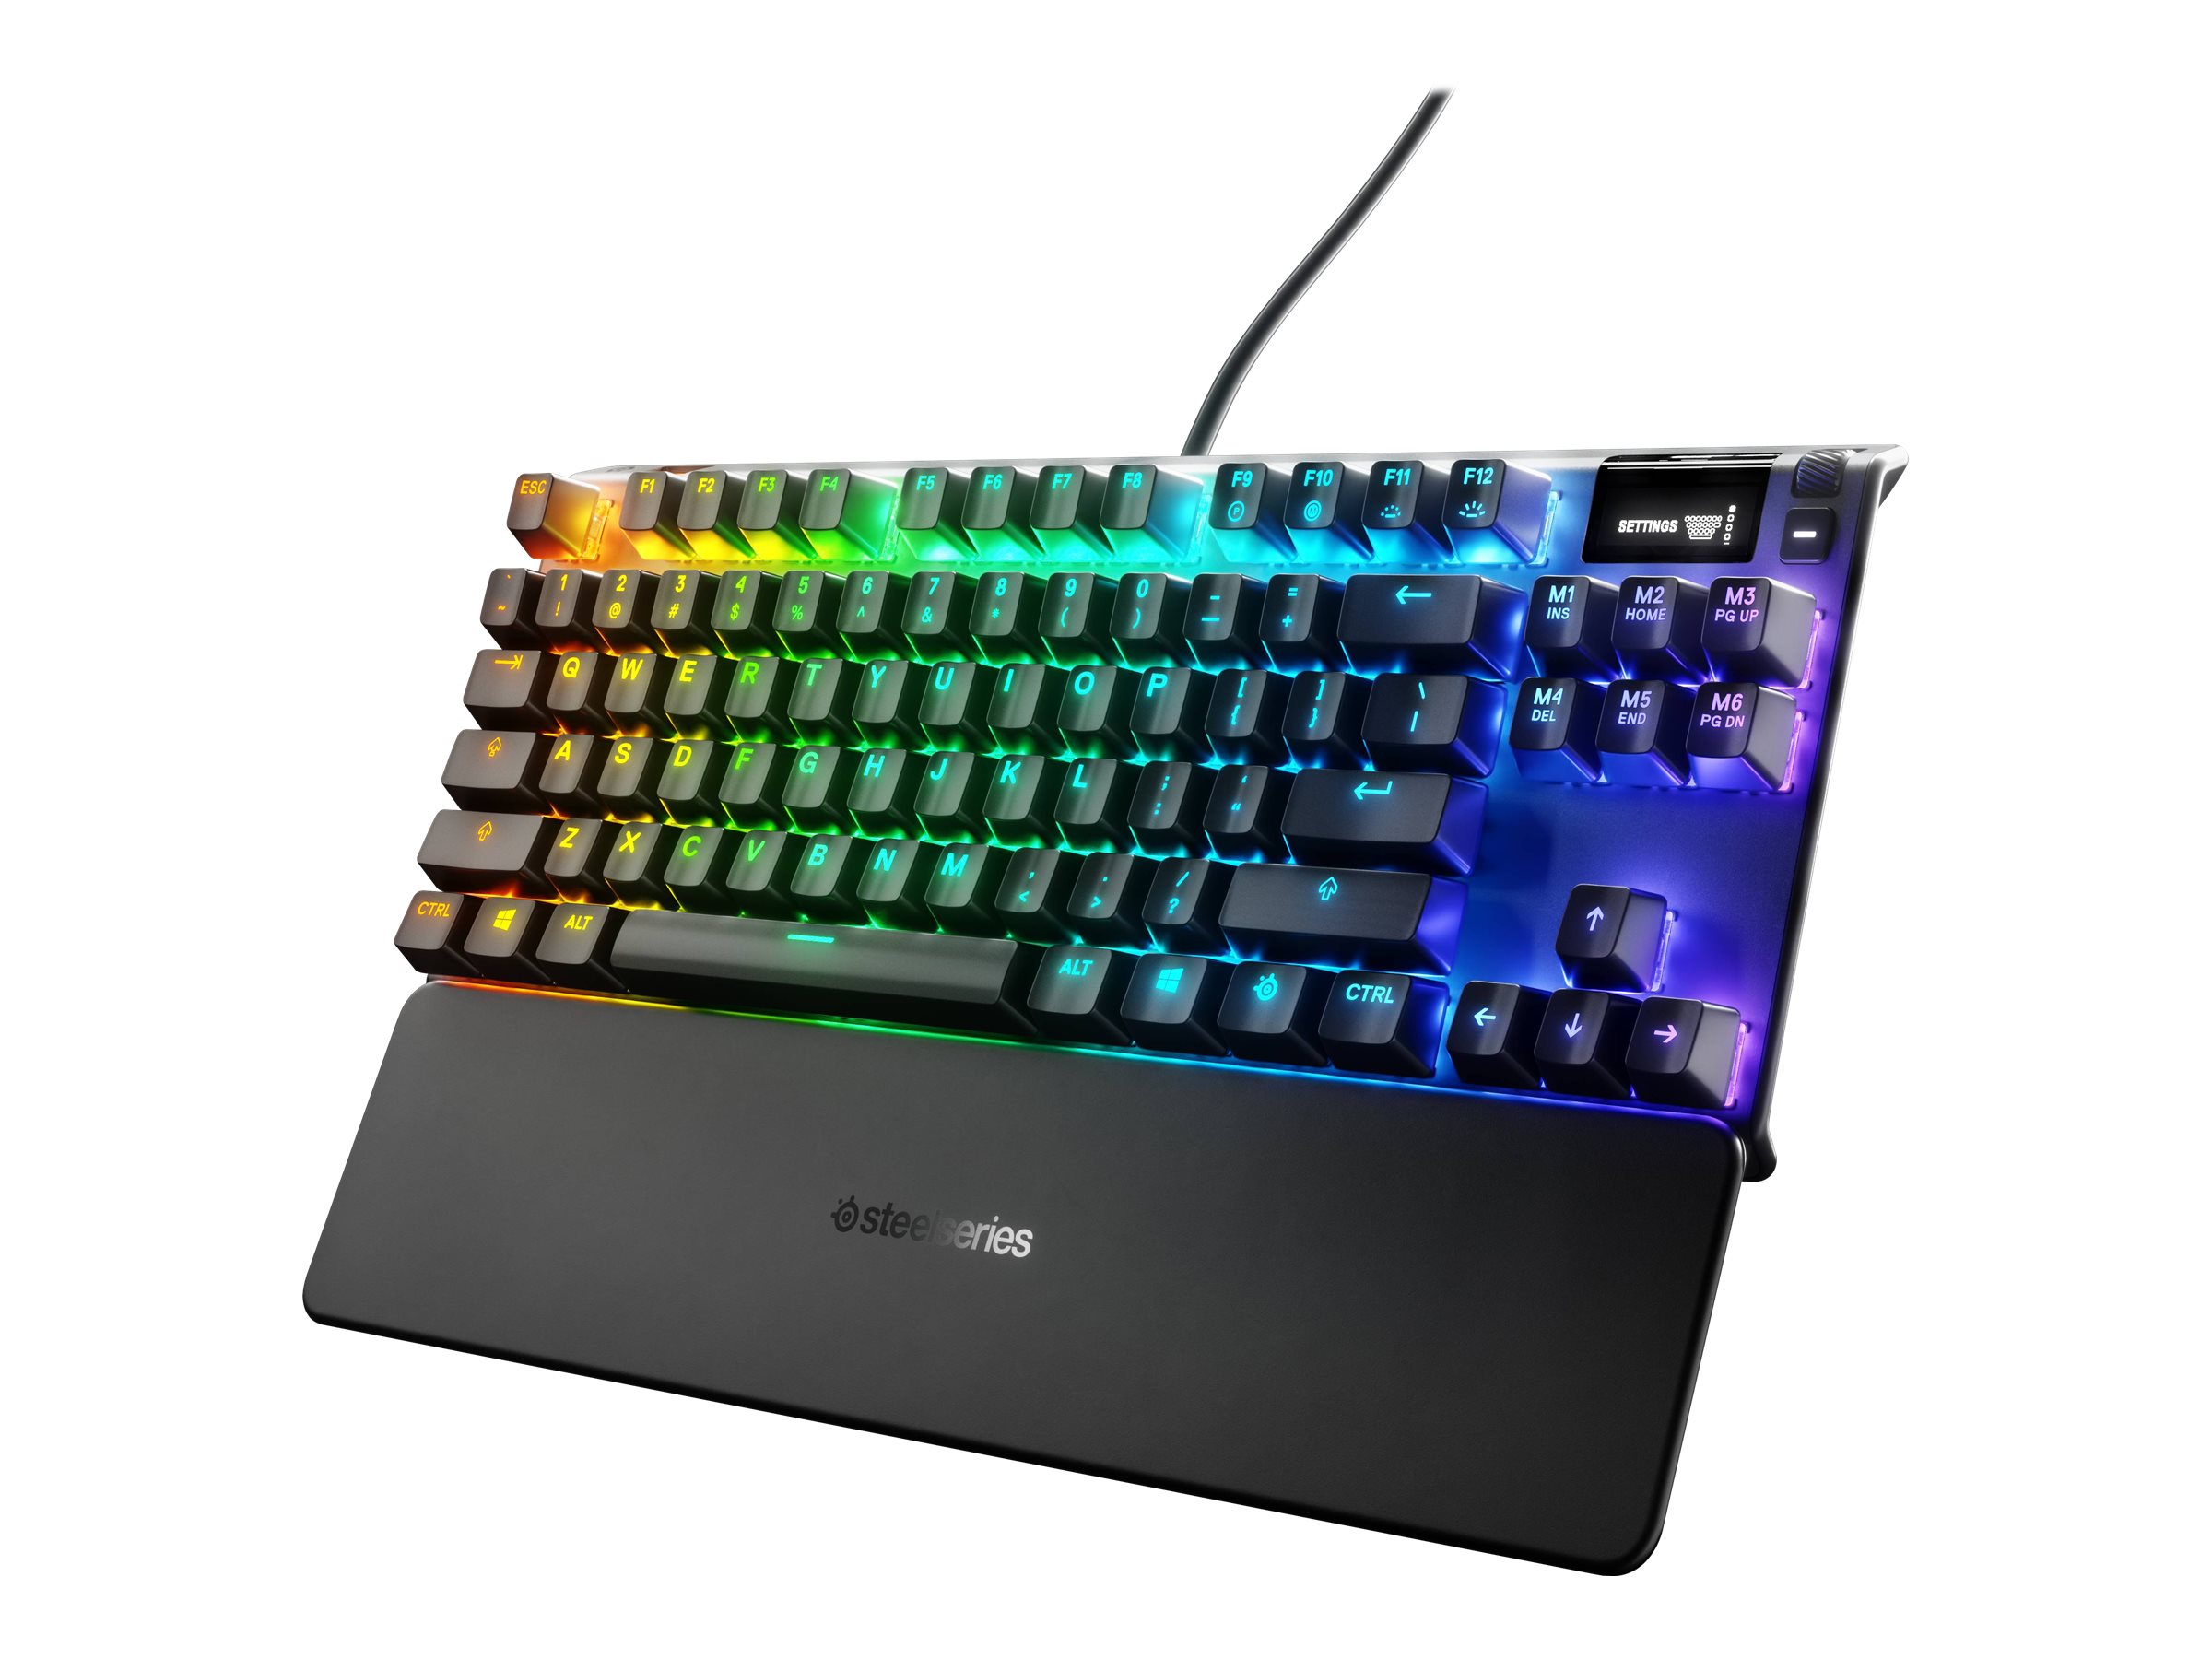 SteelSeries Apex 7 TKL USB Gaming Keyboard - 64646